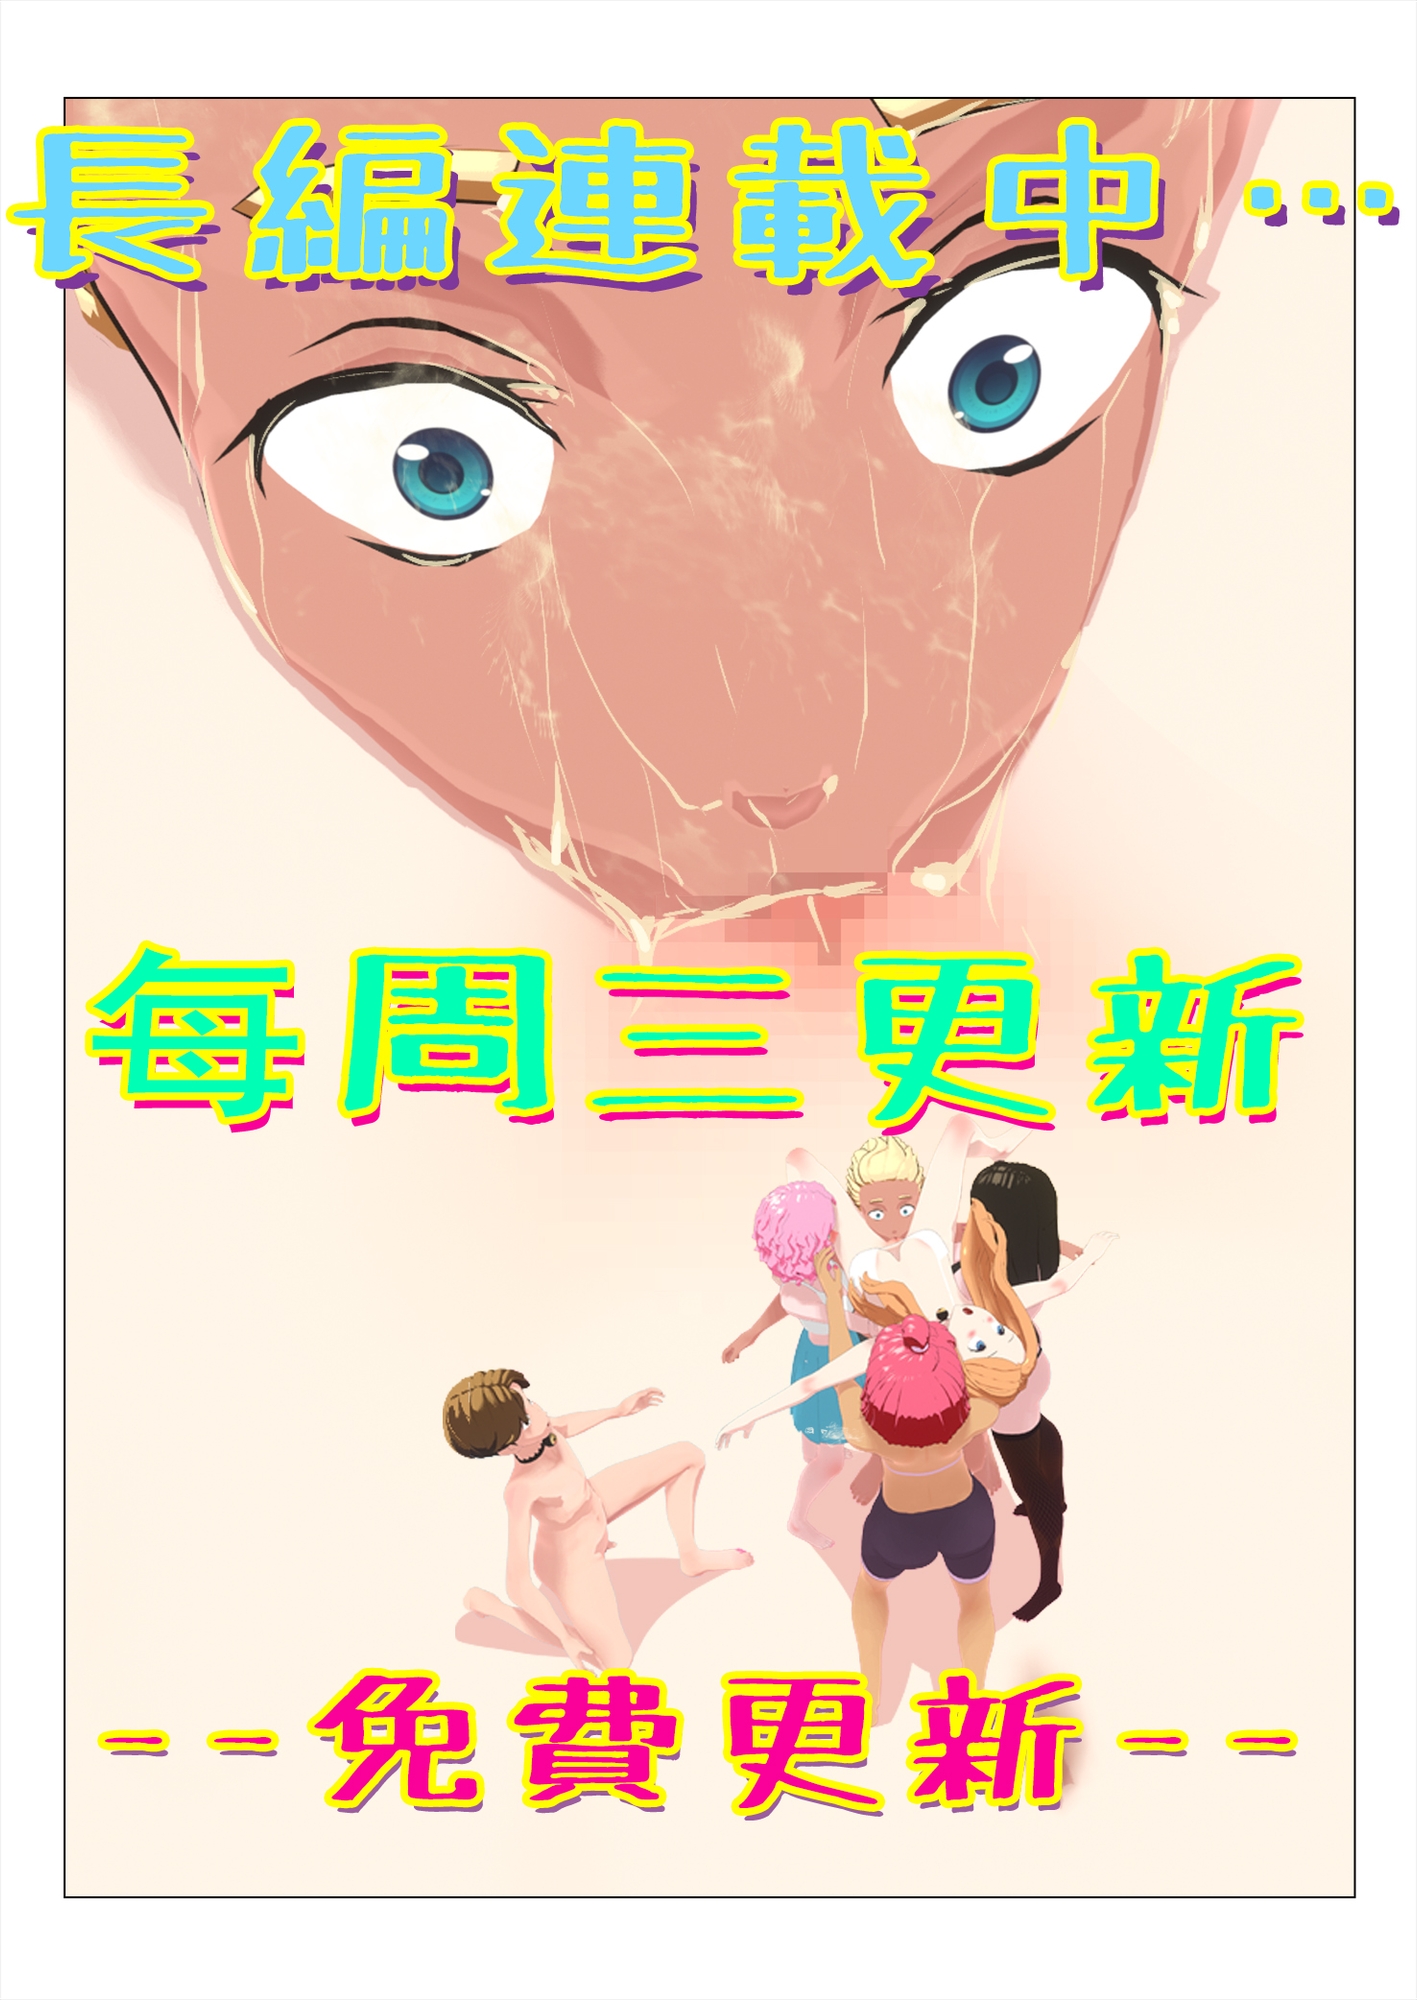 【中文彩色版本】性遊戯 Sex Game免費更新_第1-4話100P_長編連載(毎周日更新1話!!!)